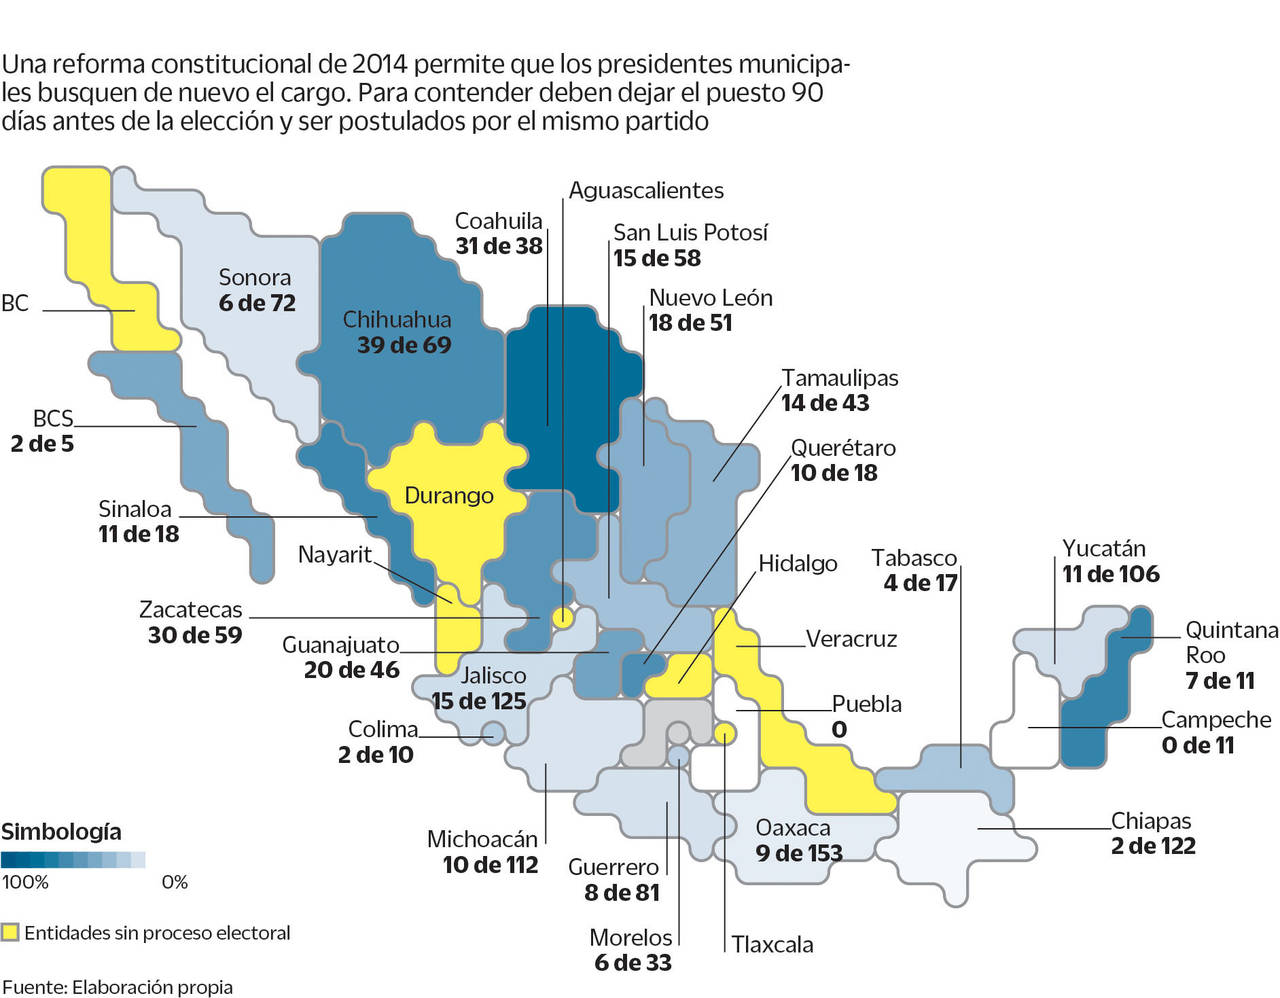 La entidad donde más munícipes ejercerán este derecho es Coahuila, pues 31 de 38 ediles ya mostraron
sus intenciones (81%), siendo la mayoría de éstos de extracción priísta. (EL UNIVERSAL)